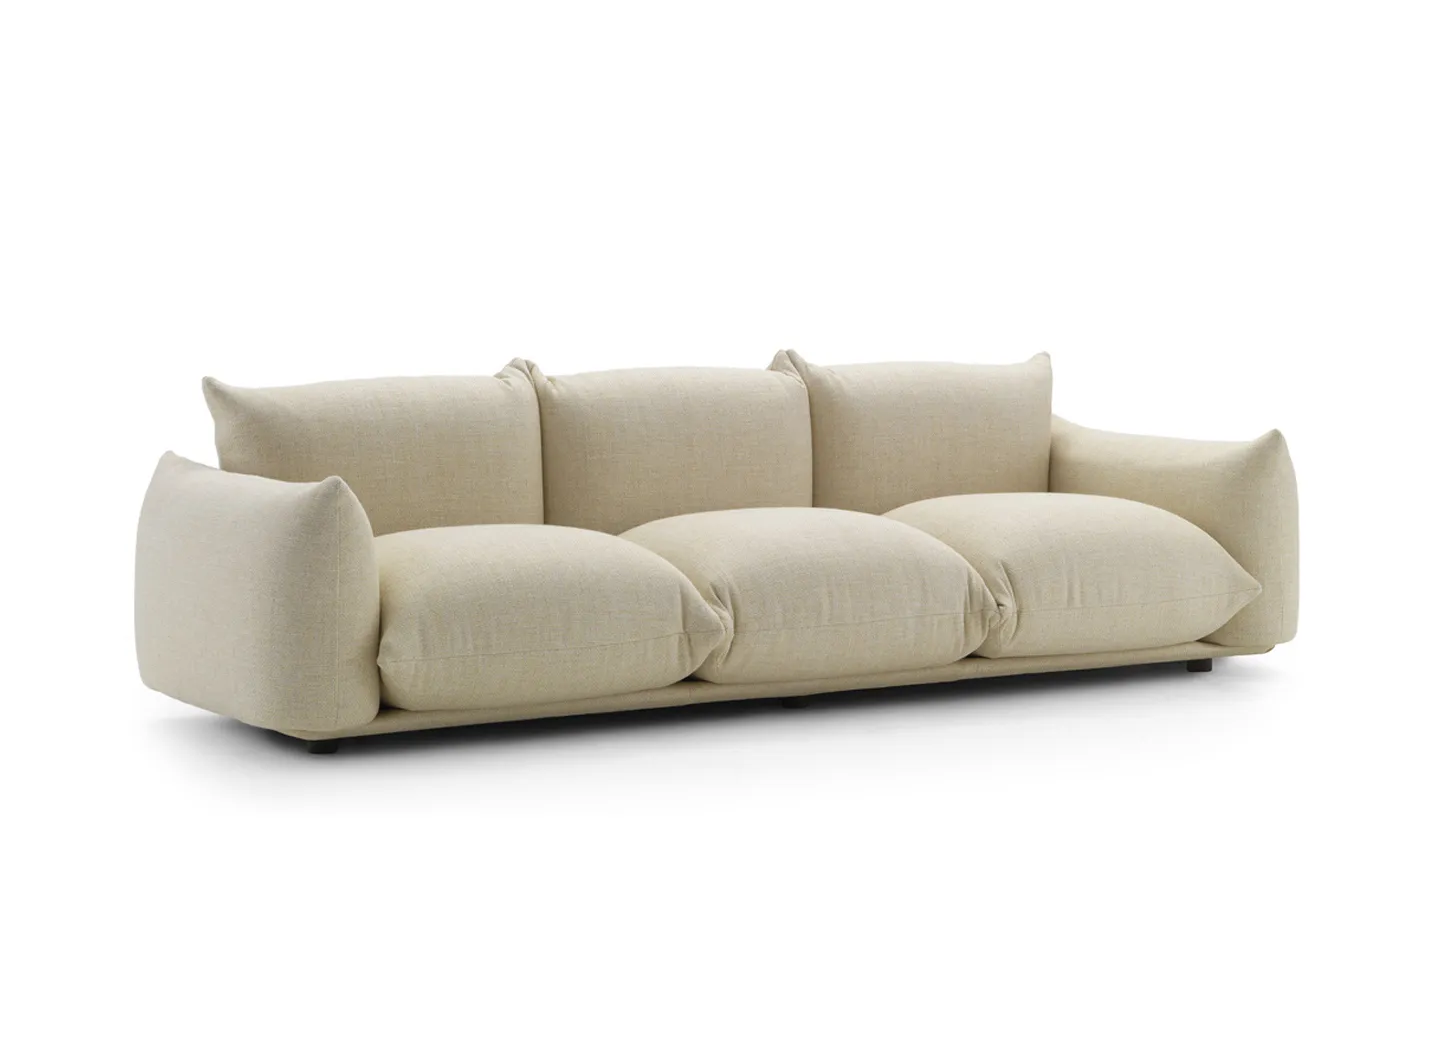 Marenco sofa - Fabric version